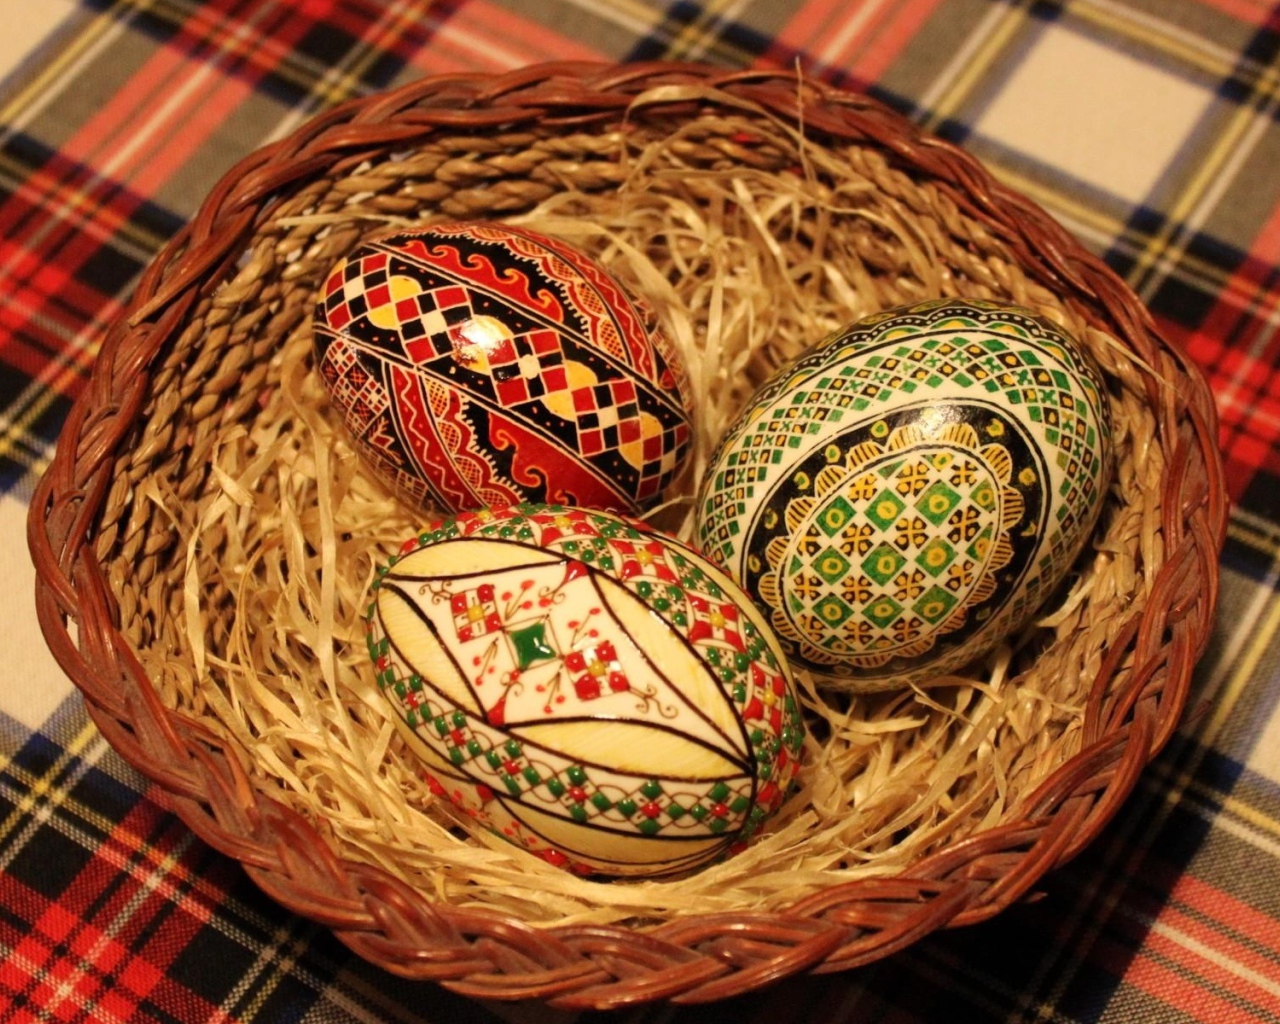 Три красивых яйца в корзине на праздник Пасха 